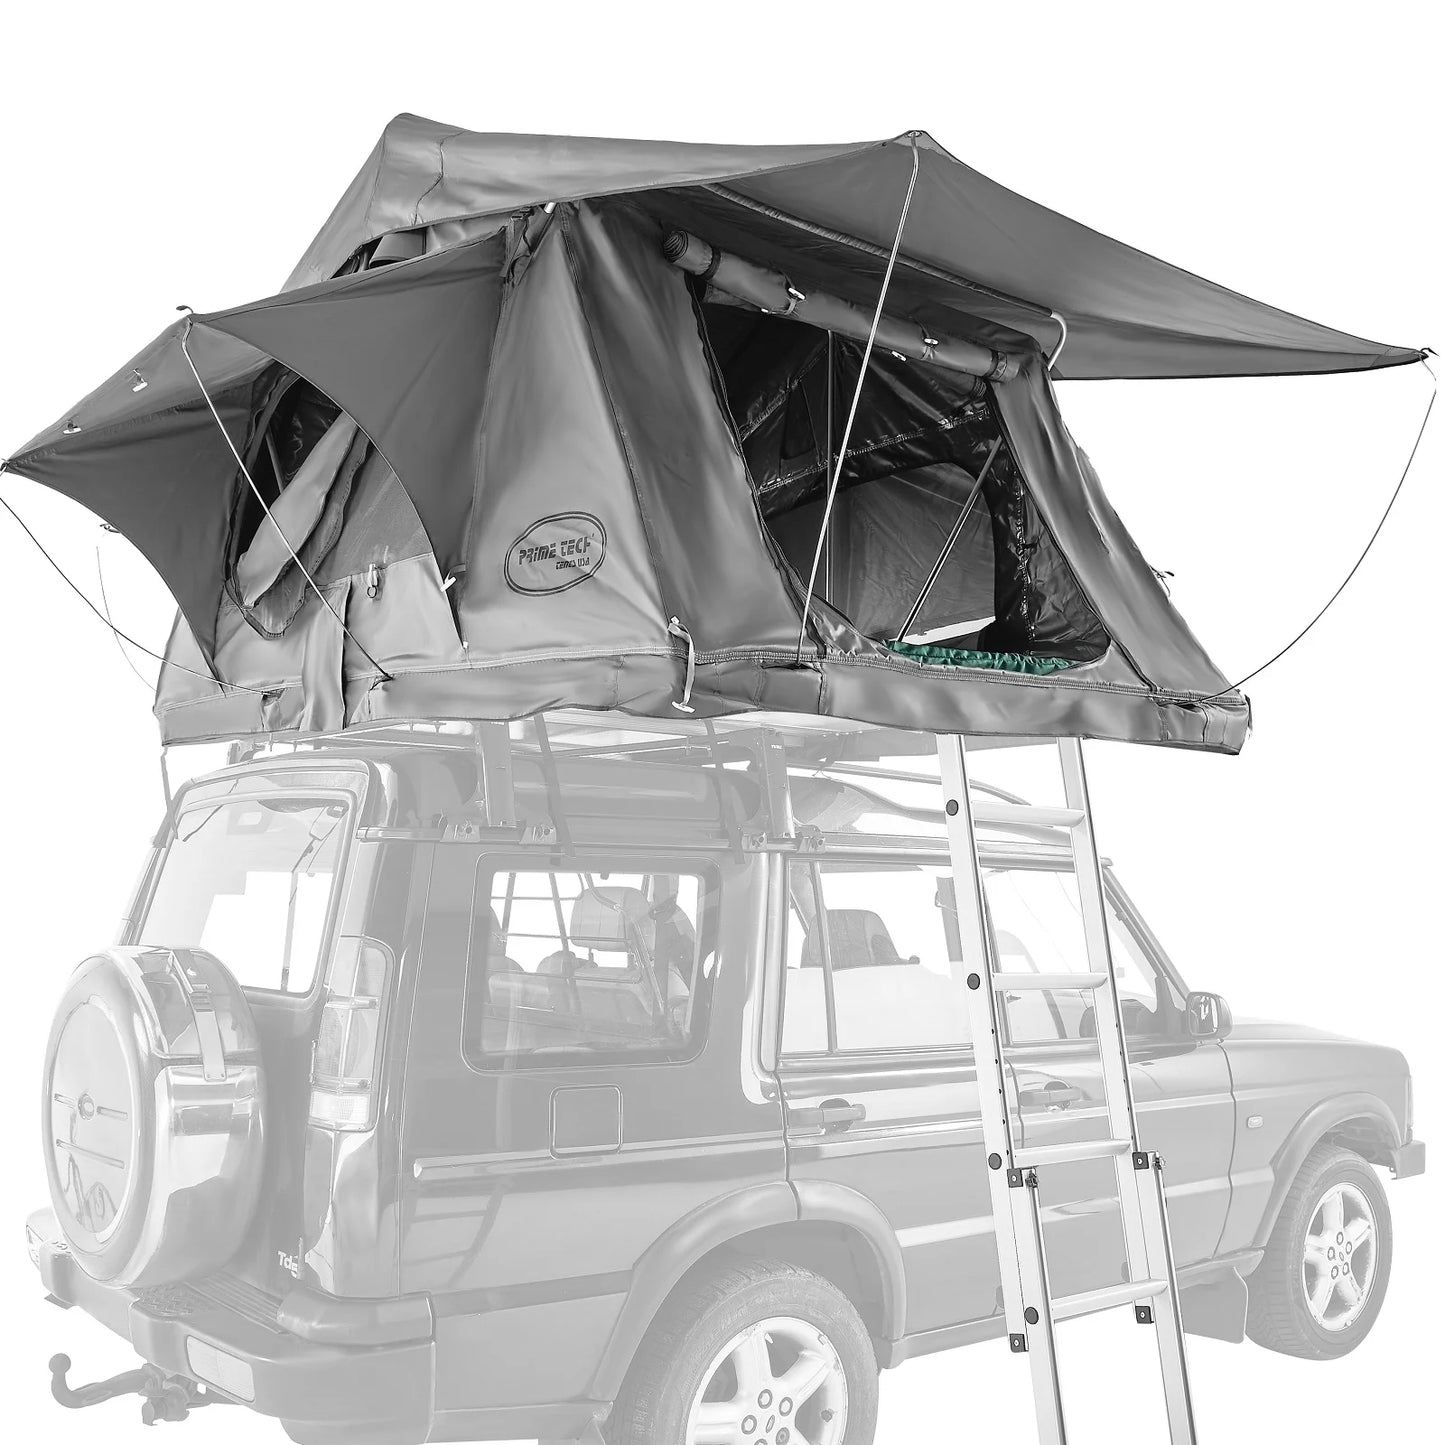 אוהל גג רכב Wasteland איכותי 240 על 140 על 130 ס"מ